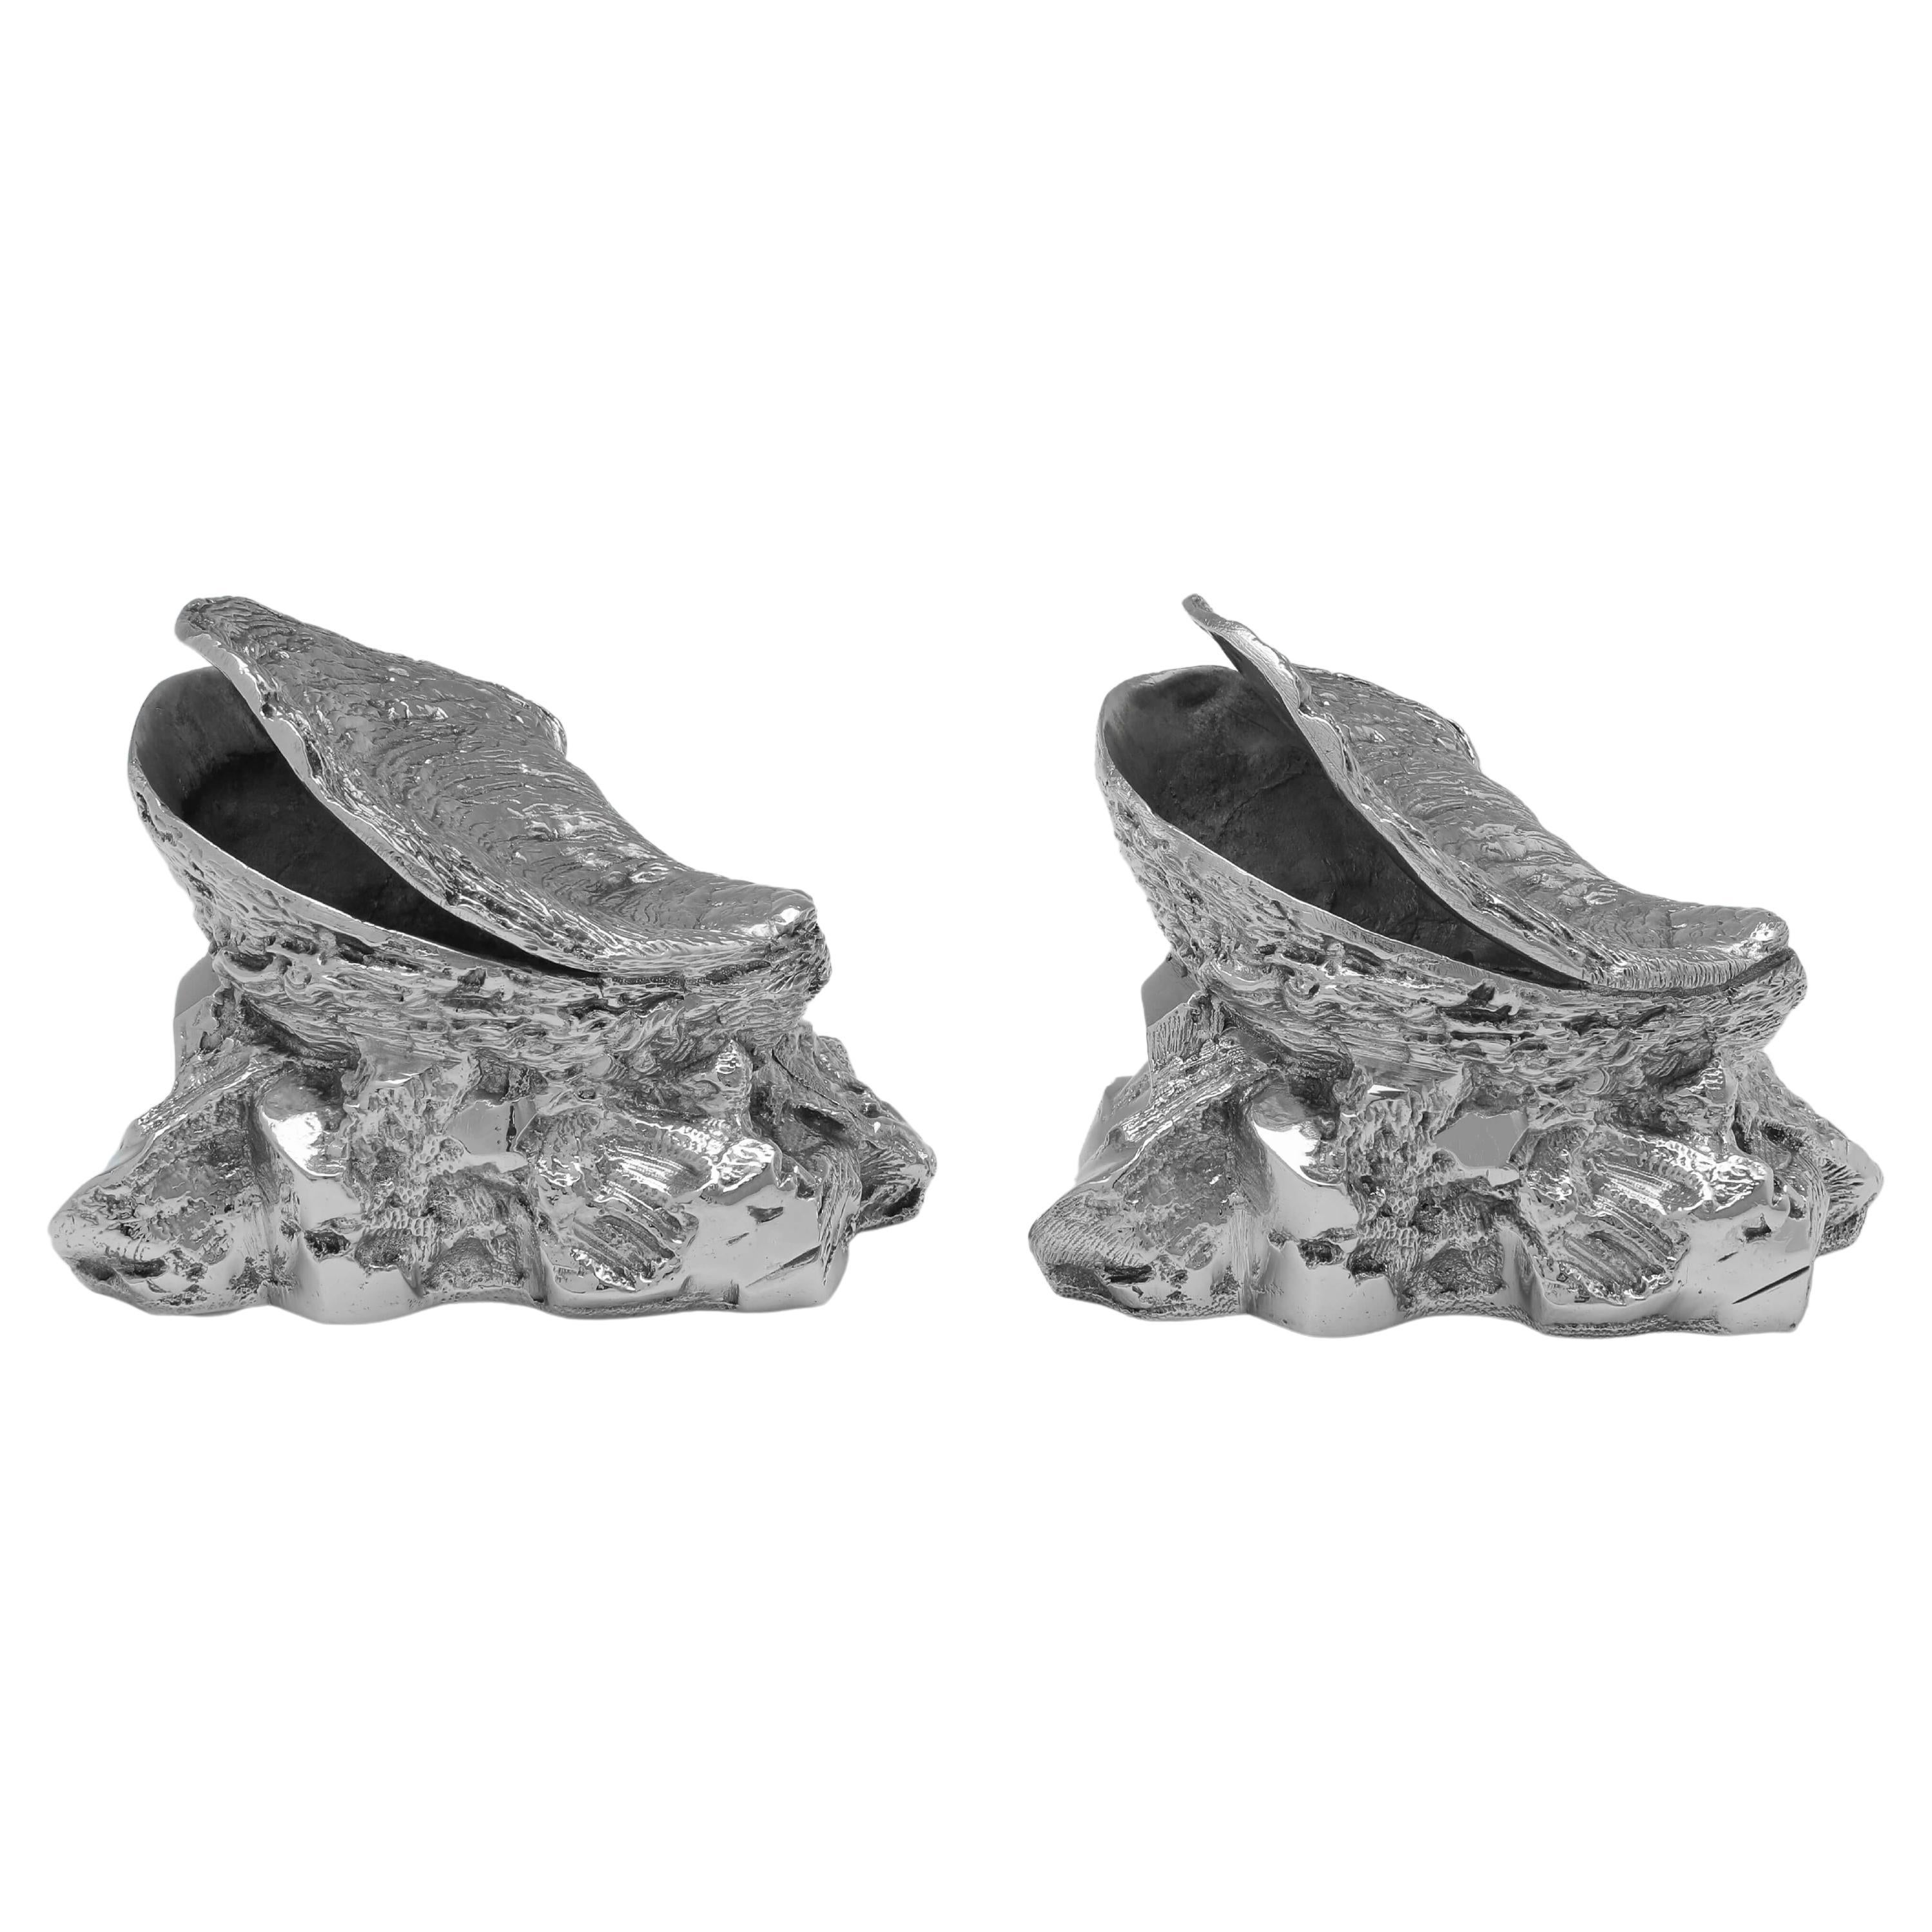 Rare paire de chaudières à cuillères anciennes en métal argenté, enregistrées en 1875